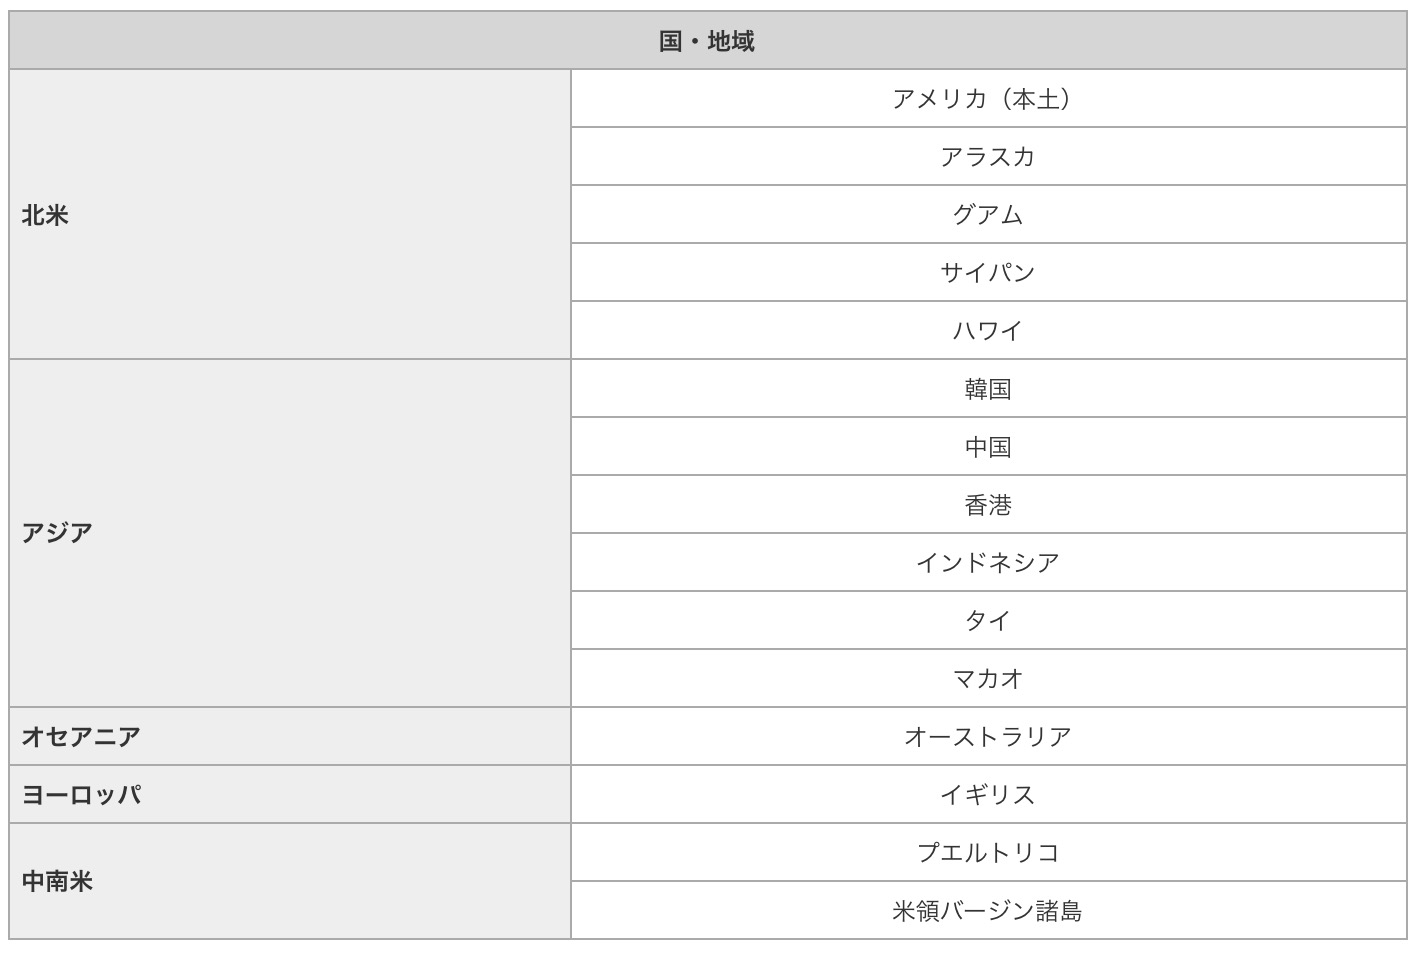 NTTドコモ、7月20日より｢パケットパック海外オプション｣でキャンペーン料金プランを提供開始へ